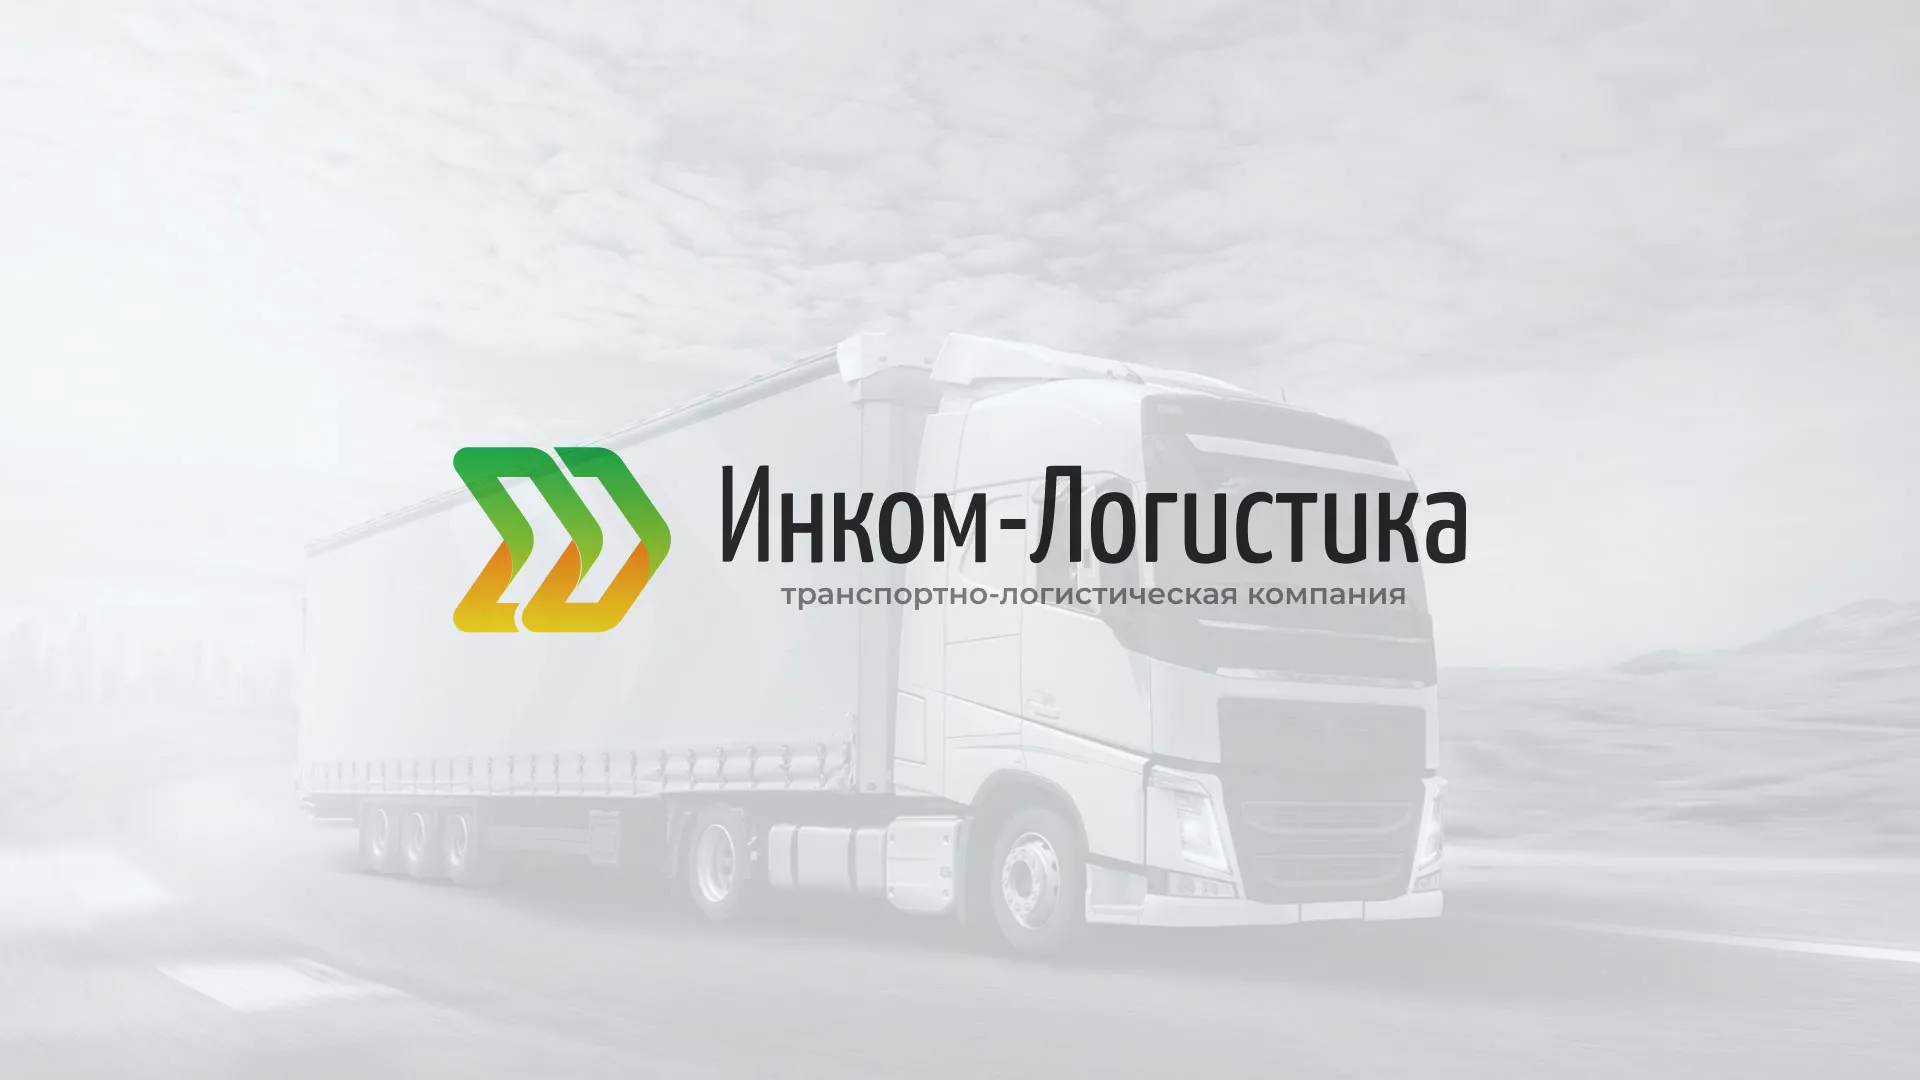 Разработка логотипа и сайта компании «Инком-Логистика» в Горбатове